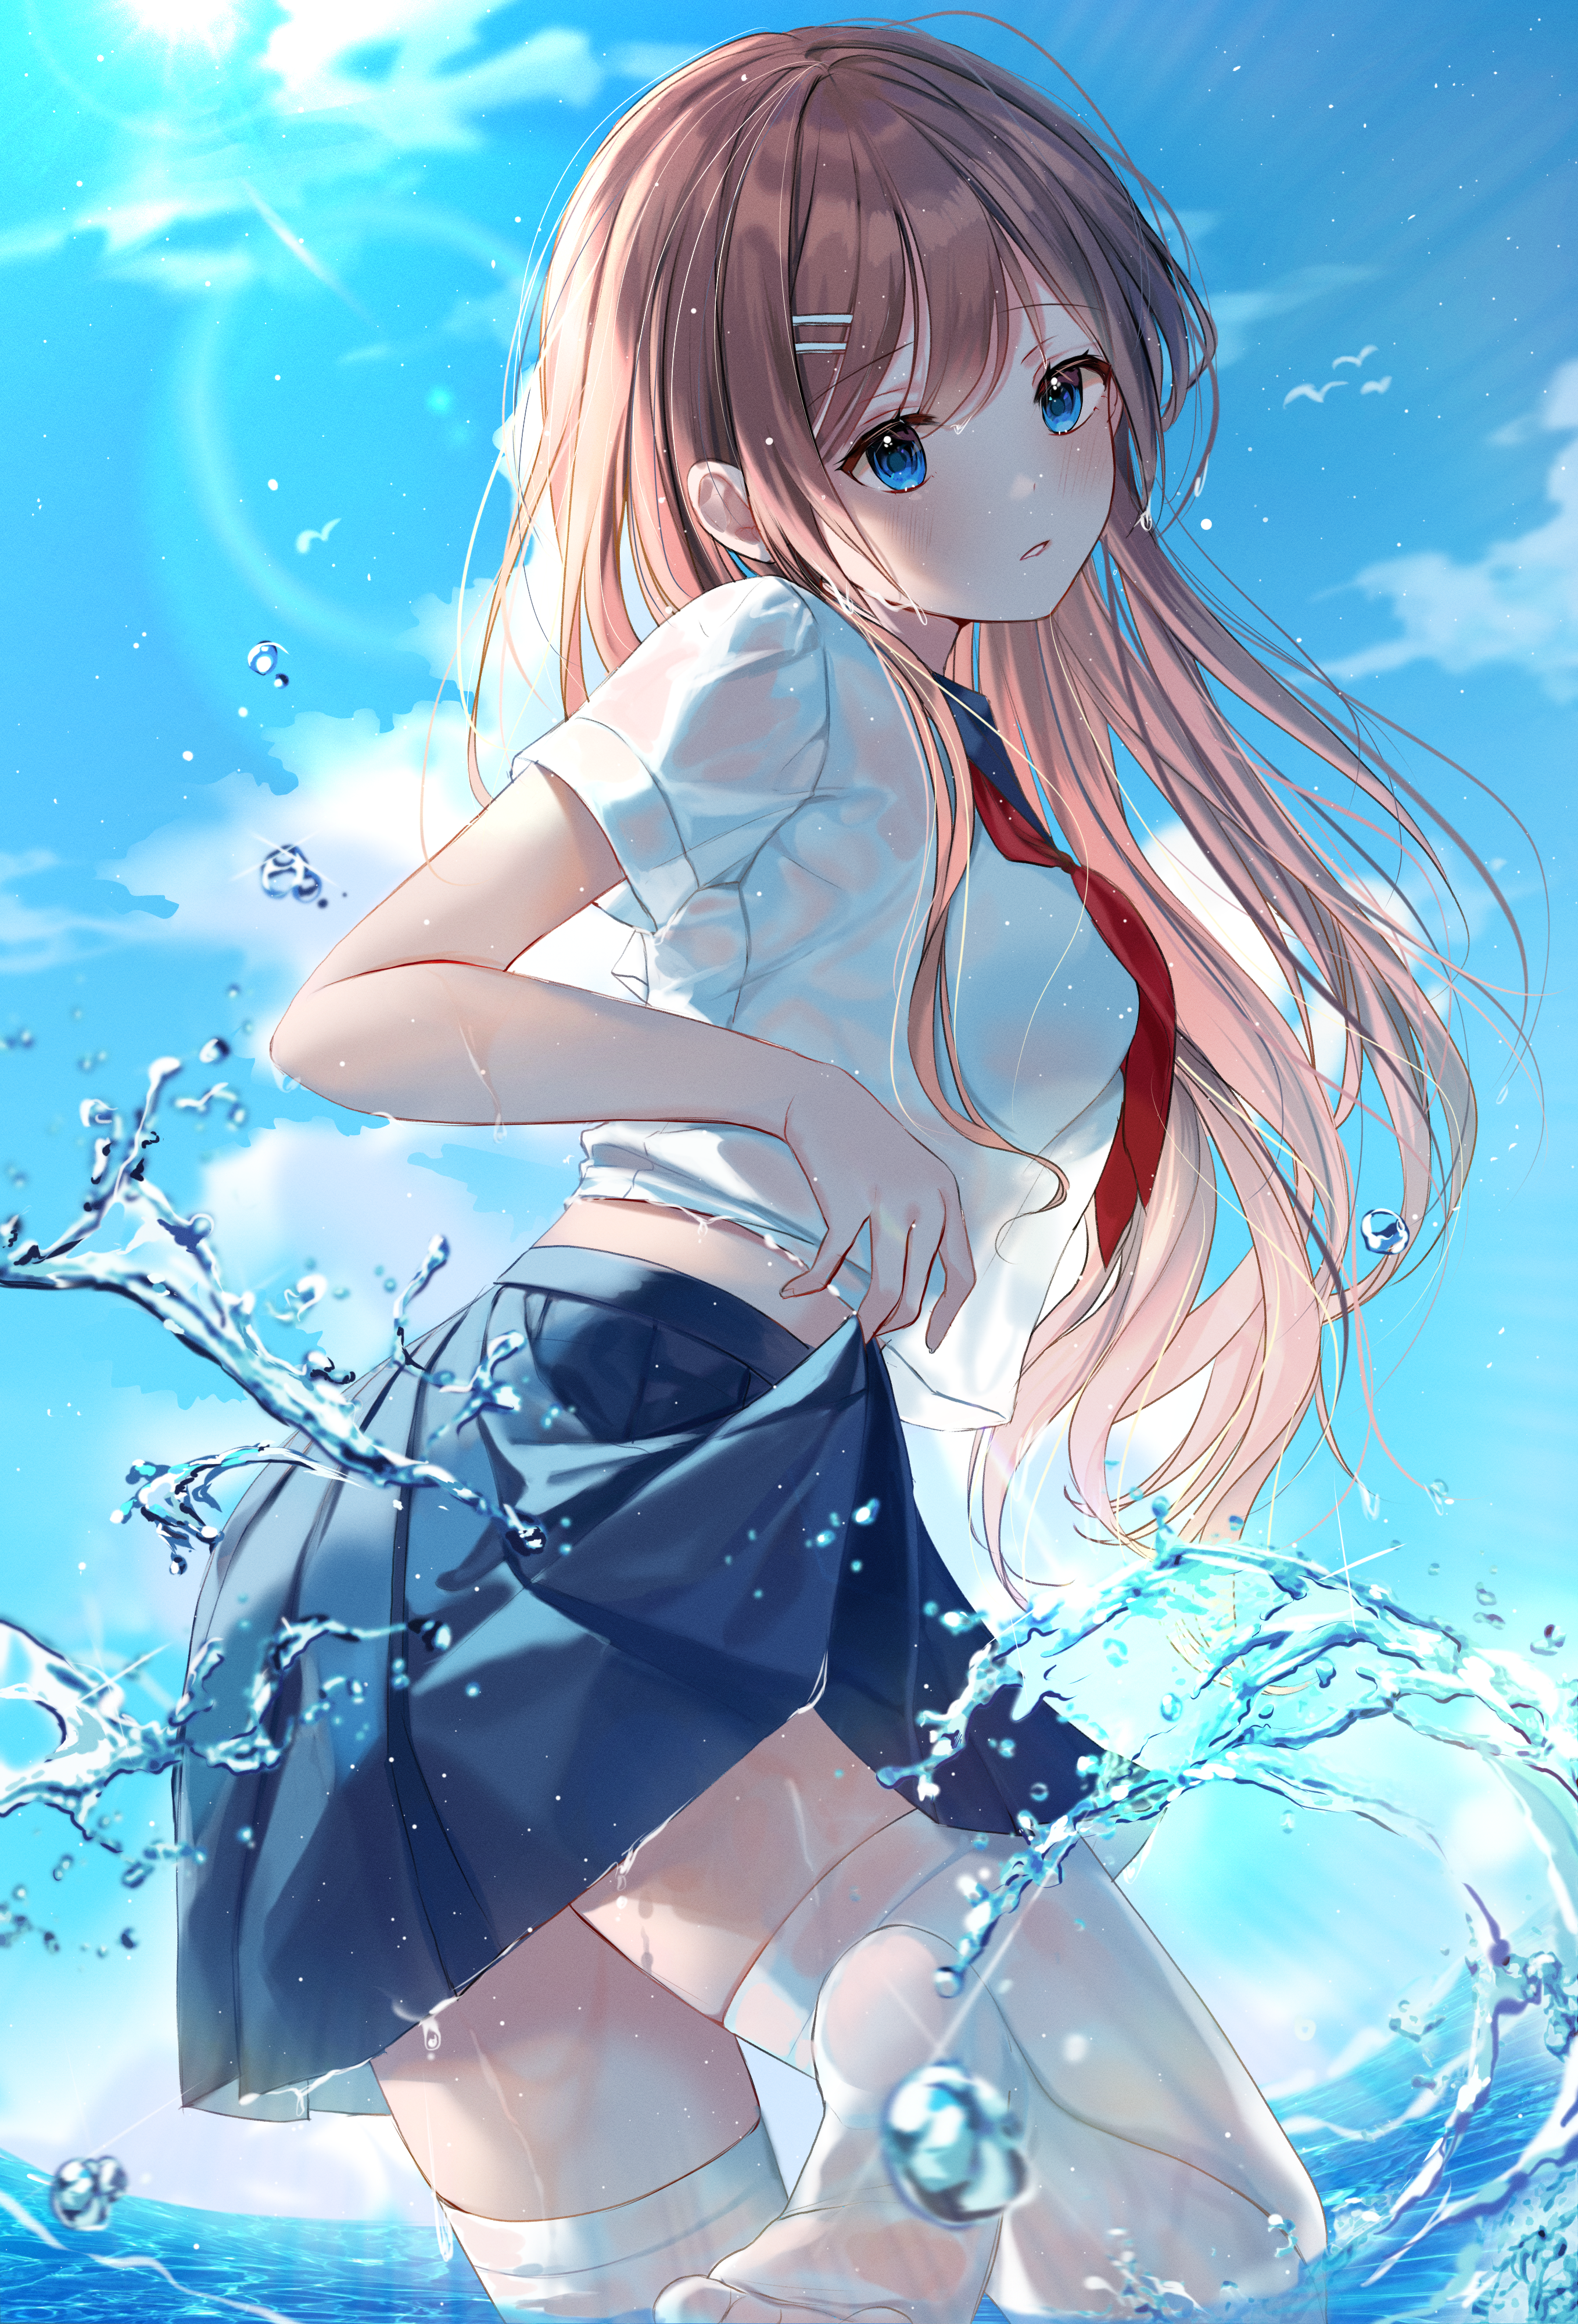 Anime Anime Girls Brunette Blue Eyes Long Hair Anime Sky Water In Water Water Splash Tie Looking At  2716x4000